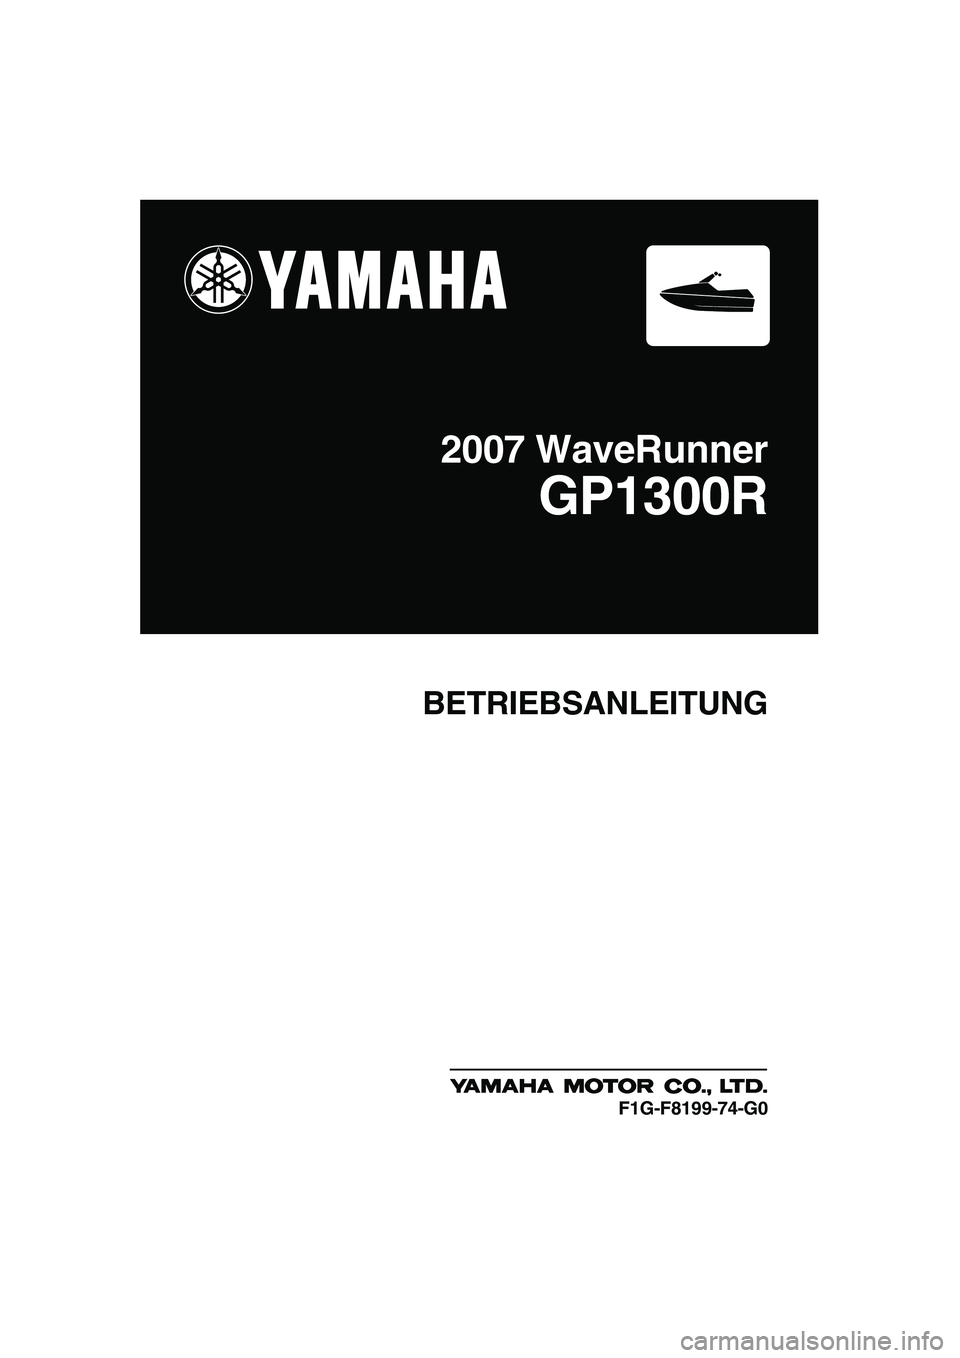 YAMAHA GP1300R 2007  Betriebsanleitungen (in German) BETRIEBSANLEITUNG
2007 WaveRunner
GP1300R
F1G-F8199-74-G0
UF1G74G0.book  Page 1  Monday, July 31, 2006  9:35 AM 